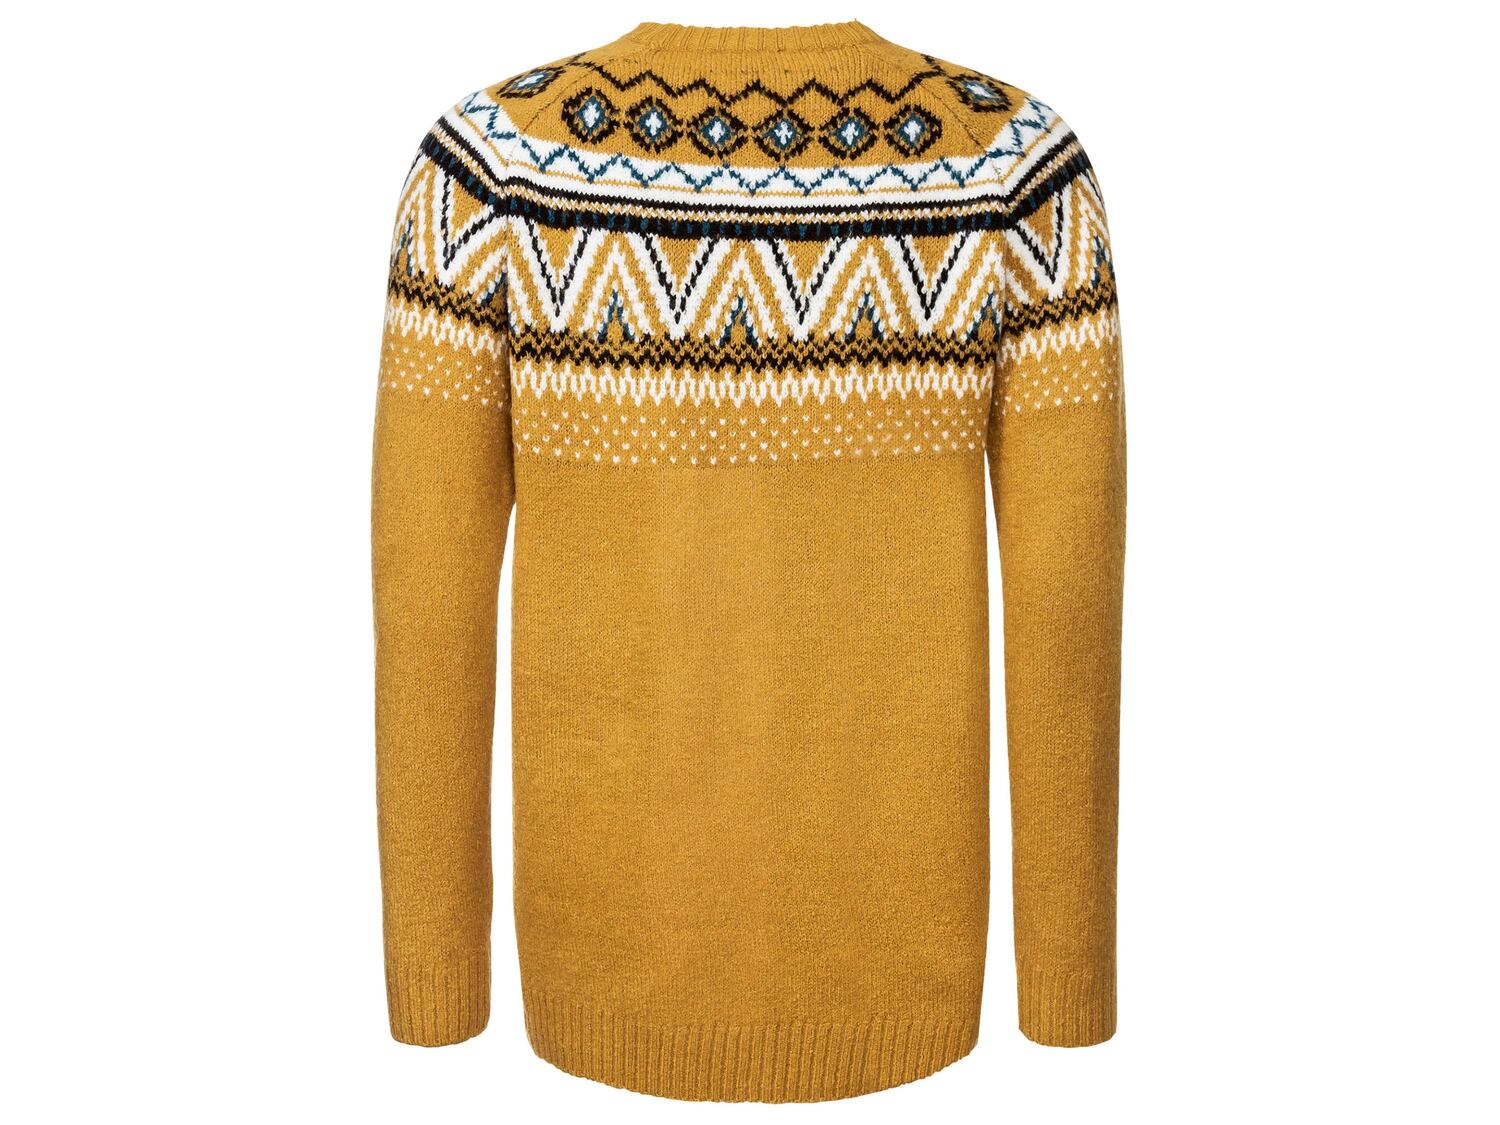 Sweter damski Esmara, cena 39,99 PLN 
- rozmiary: S-L
- wz&oacute;r żakardowy ...